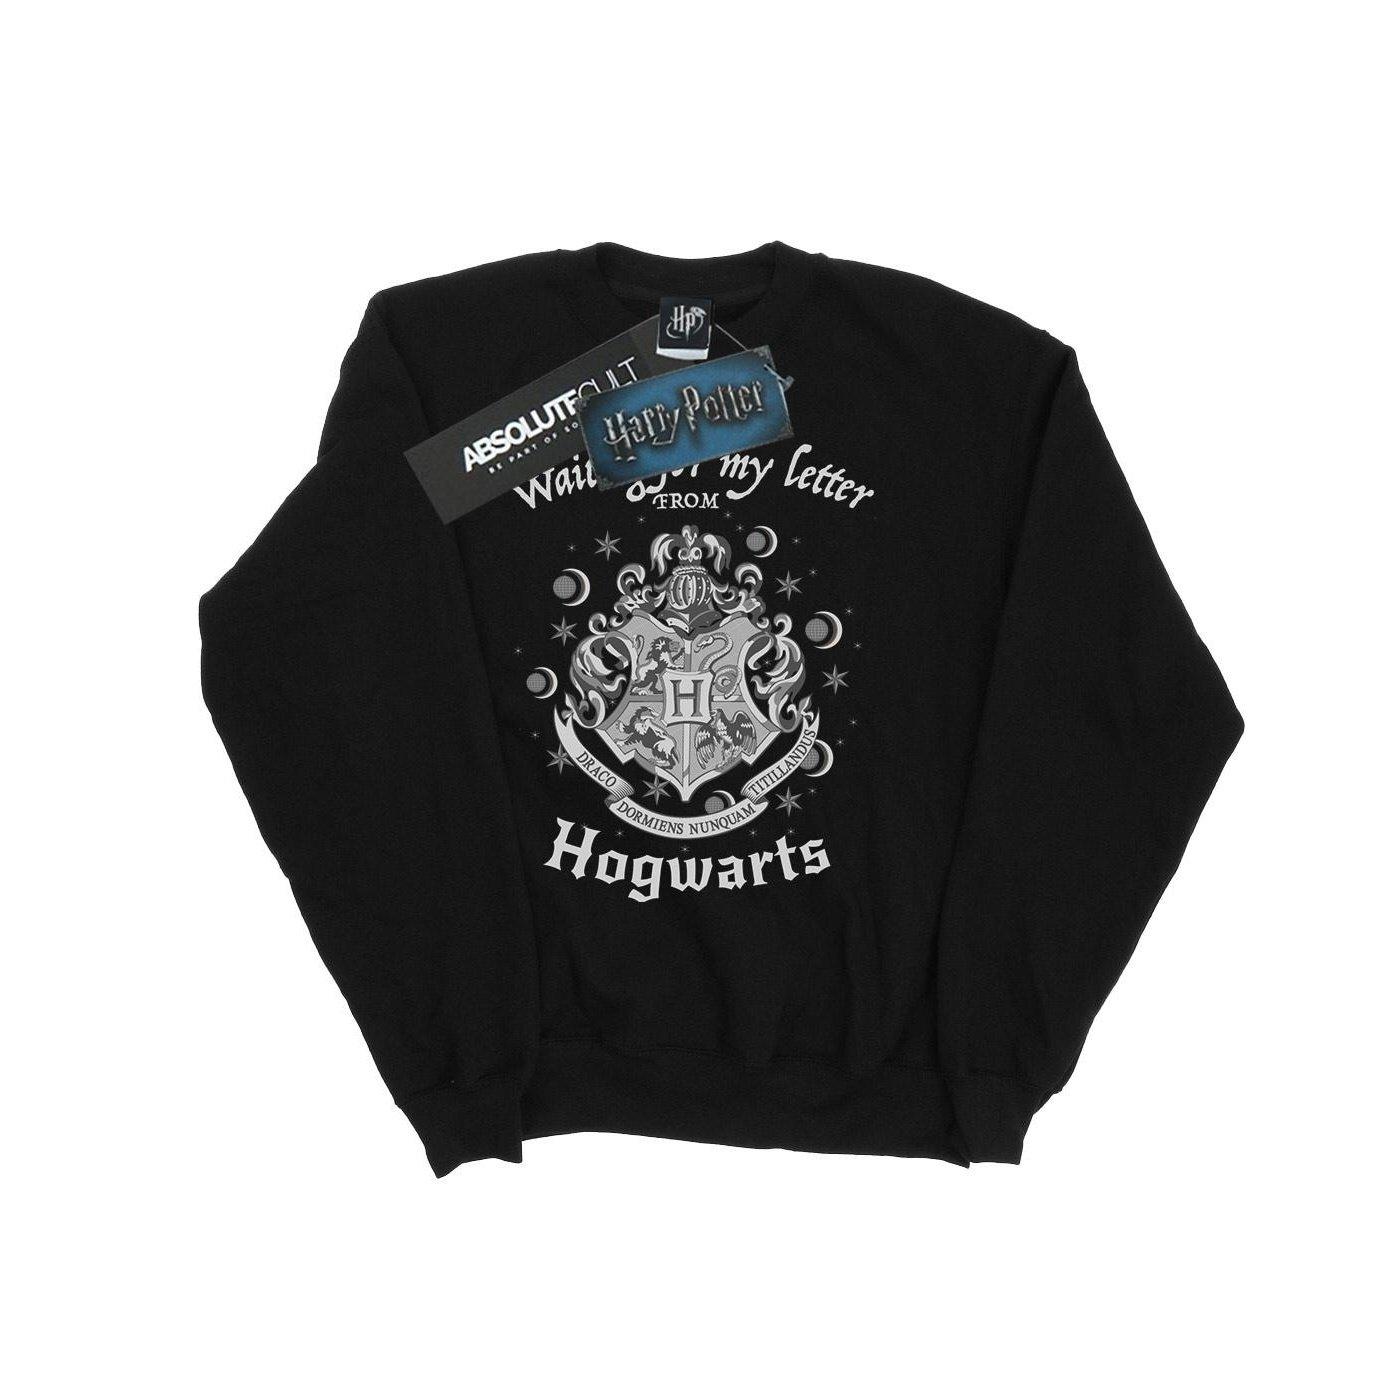 Hogwarts Waiting For My Letter Sweatshirt Unisex Schwarz 128 von Harry Potter